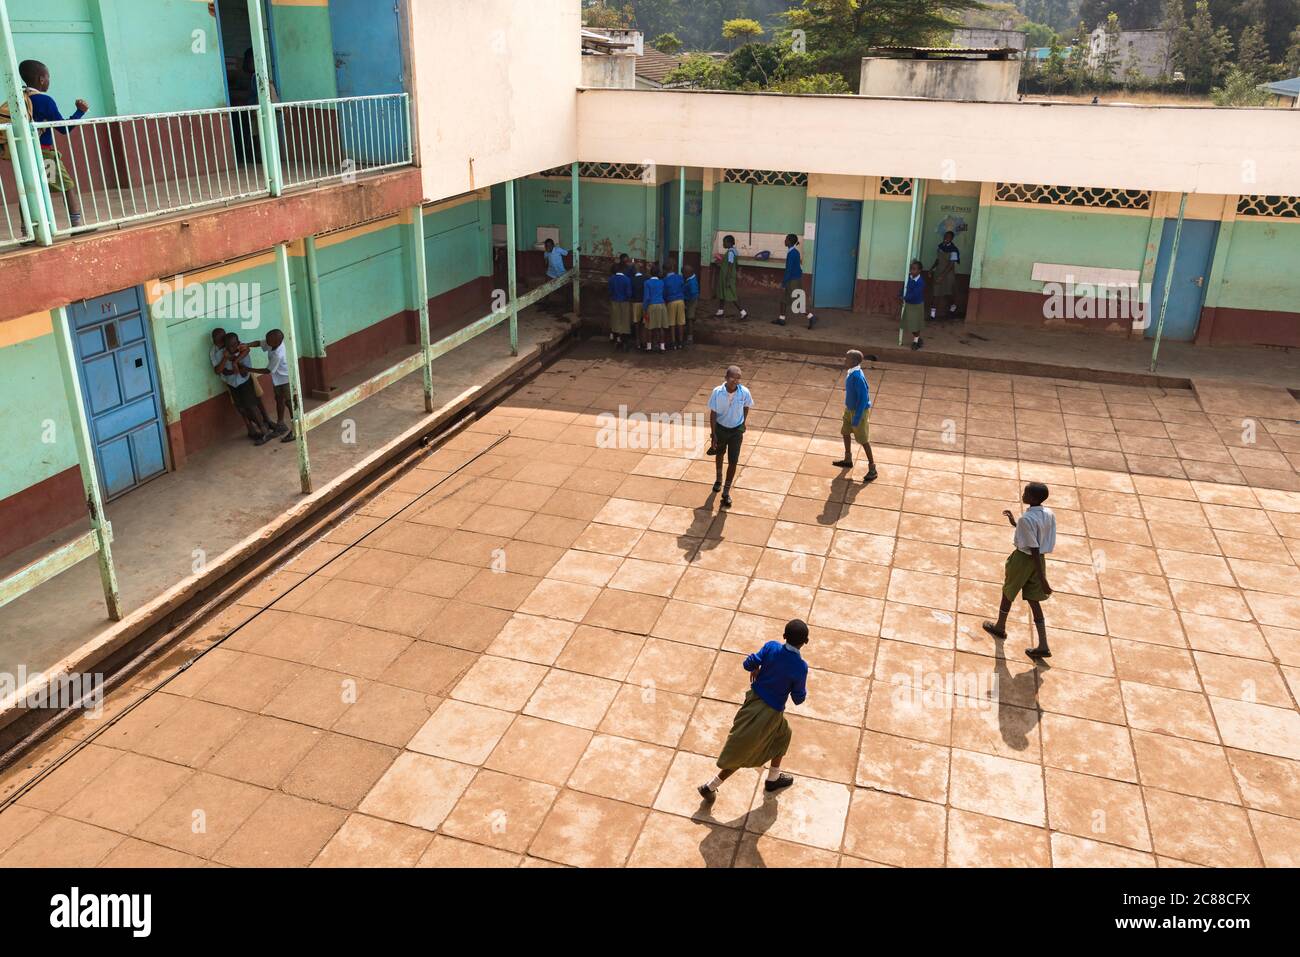 Außenansicht der Sekundarschule mit Innenhof und Kindern in Uniform, Nairobi, Kenia Stockfoto